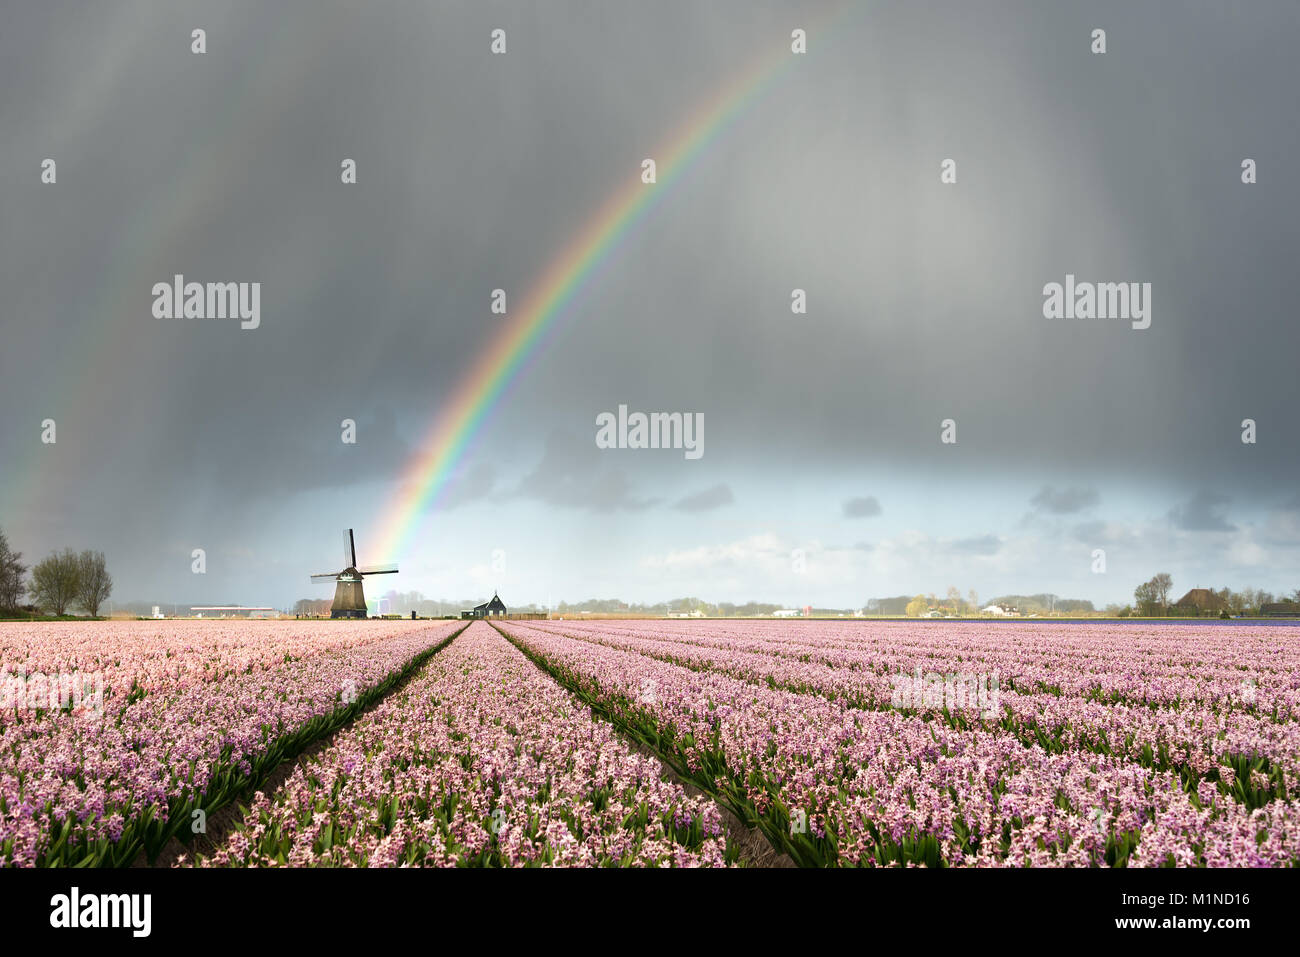 Un arco iris en las nubes pesadas durante una tormenta sobre un molino de viento y Jacinto rosa campos de flores, en un paisaje de los Países Bajos en la primavera. Foto de stock